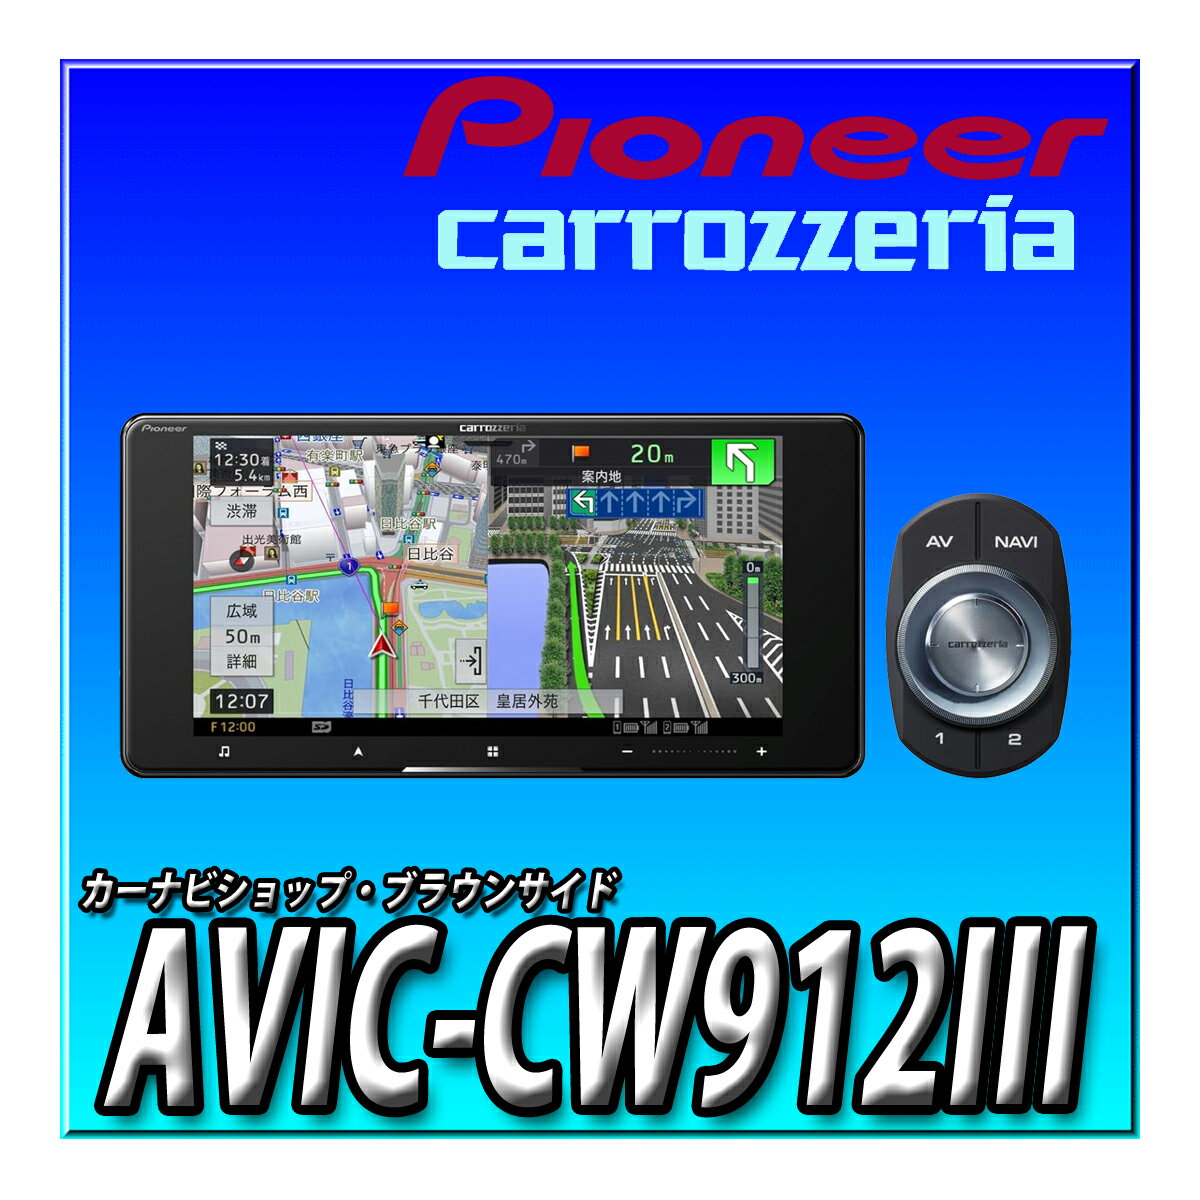 AVIC-CW912III Pioneer カーナビ 7インチワイド サイバーナビ 無料地図更新 フルセグ DVD CD Bluetooth SD USB ハイレゾ HD画質 カロッツェリア